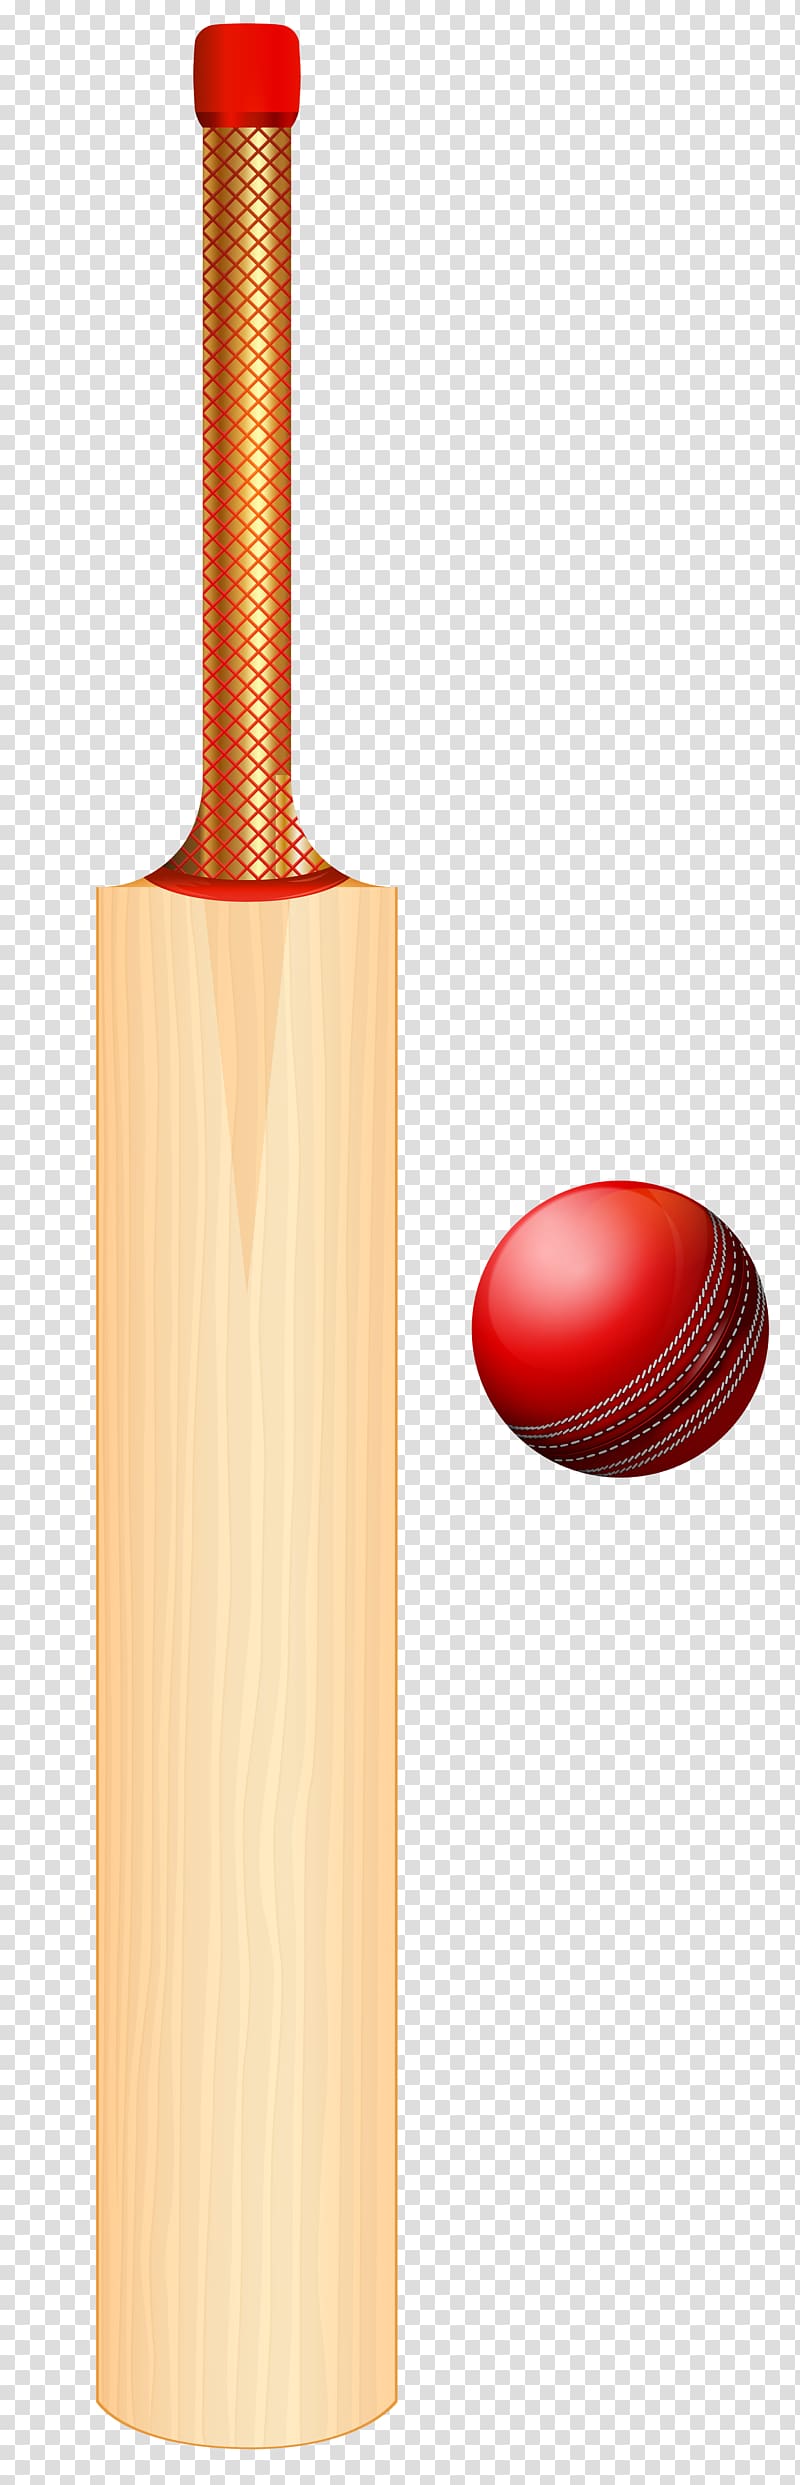 Cricket Bats Batting Cricket Balls , cricket transparent background PNG clipart